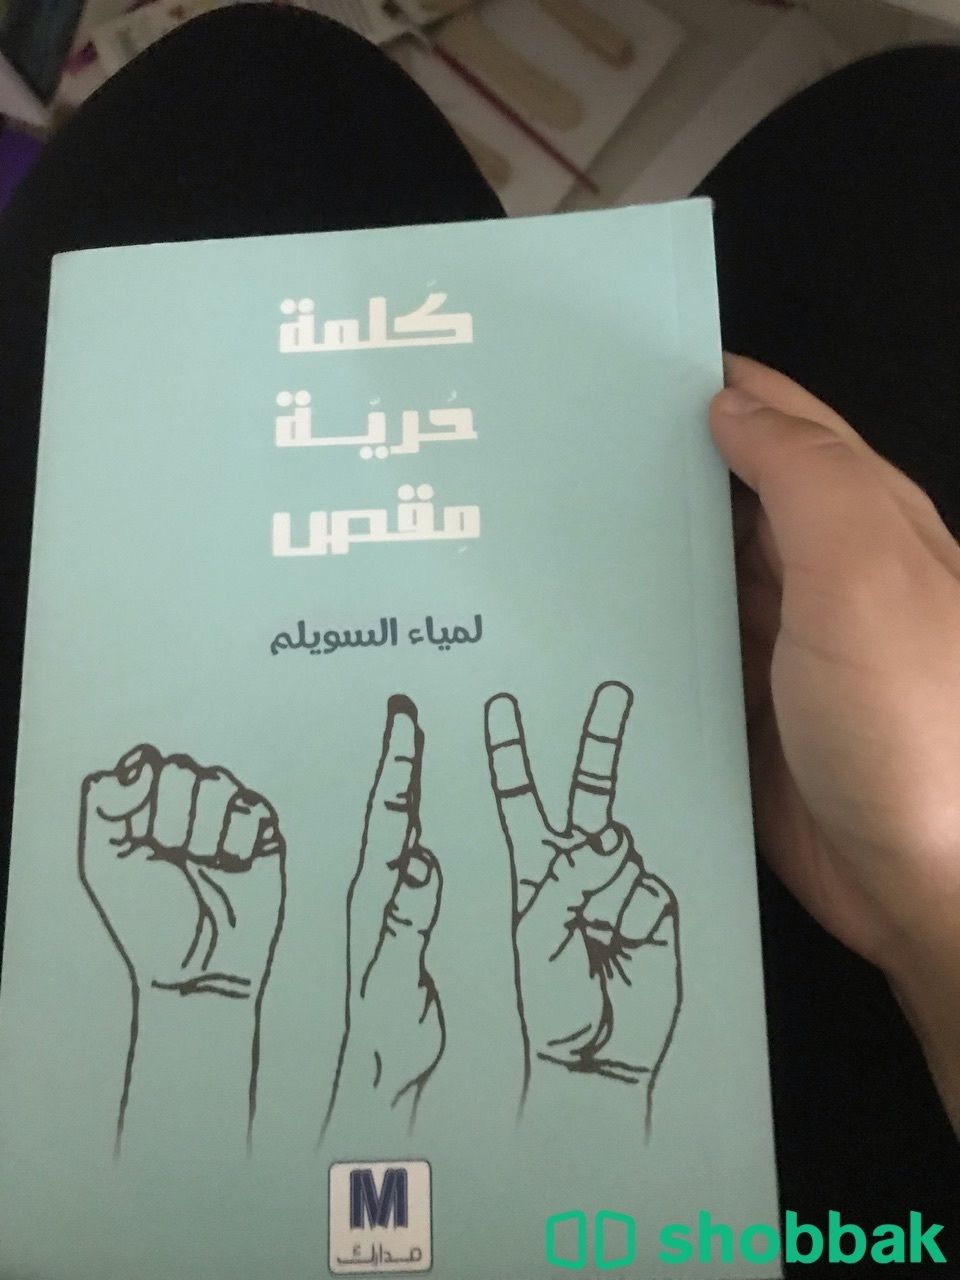 كتب مستخدمه للبيع 10 للكتاب الواحد  Shobbak Saudi Arabia